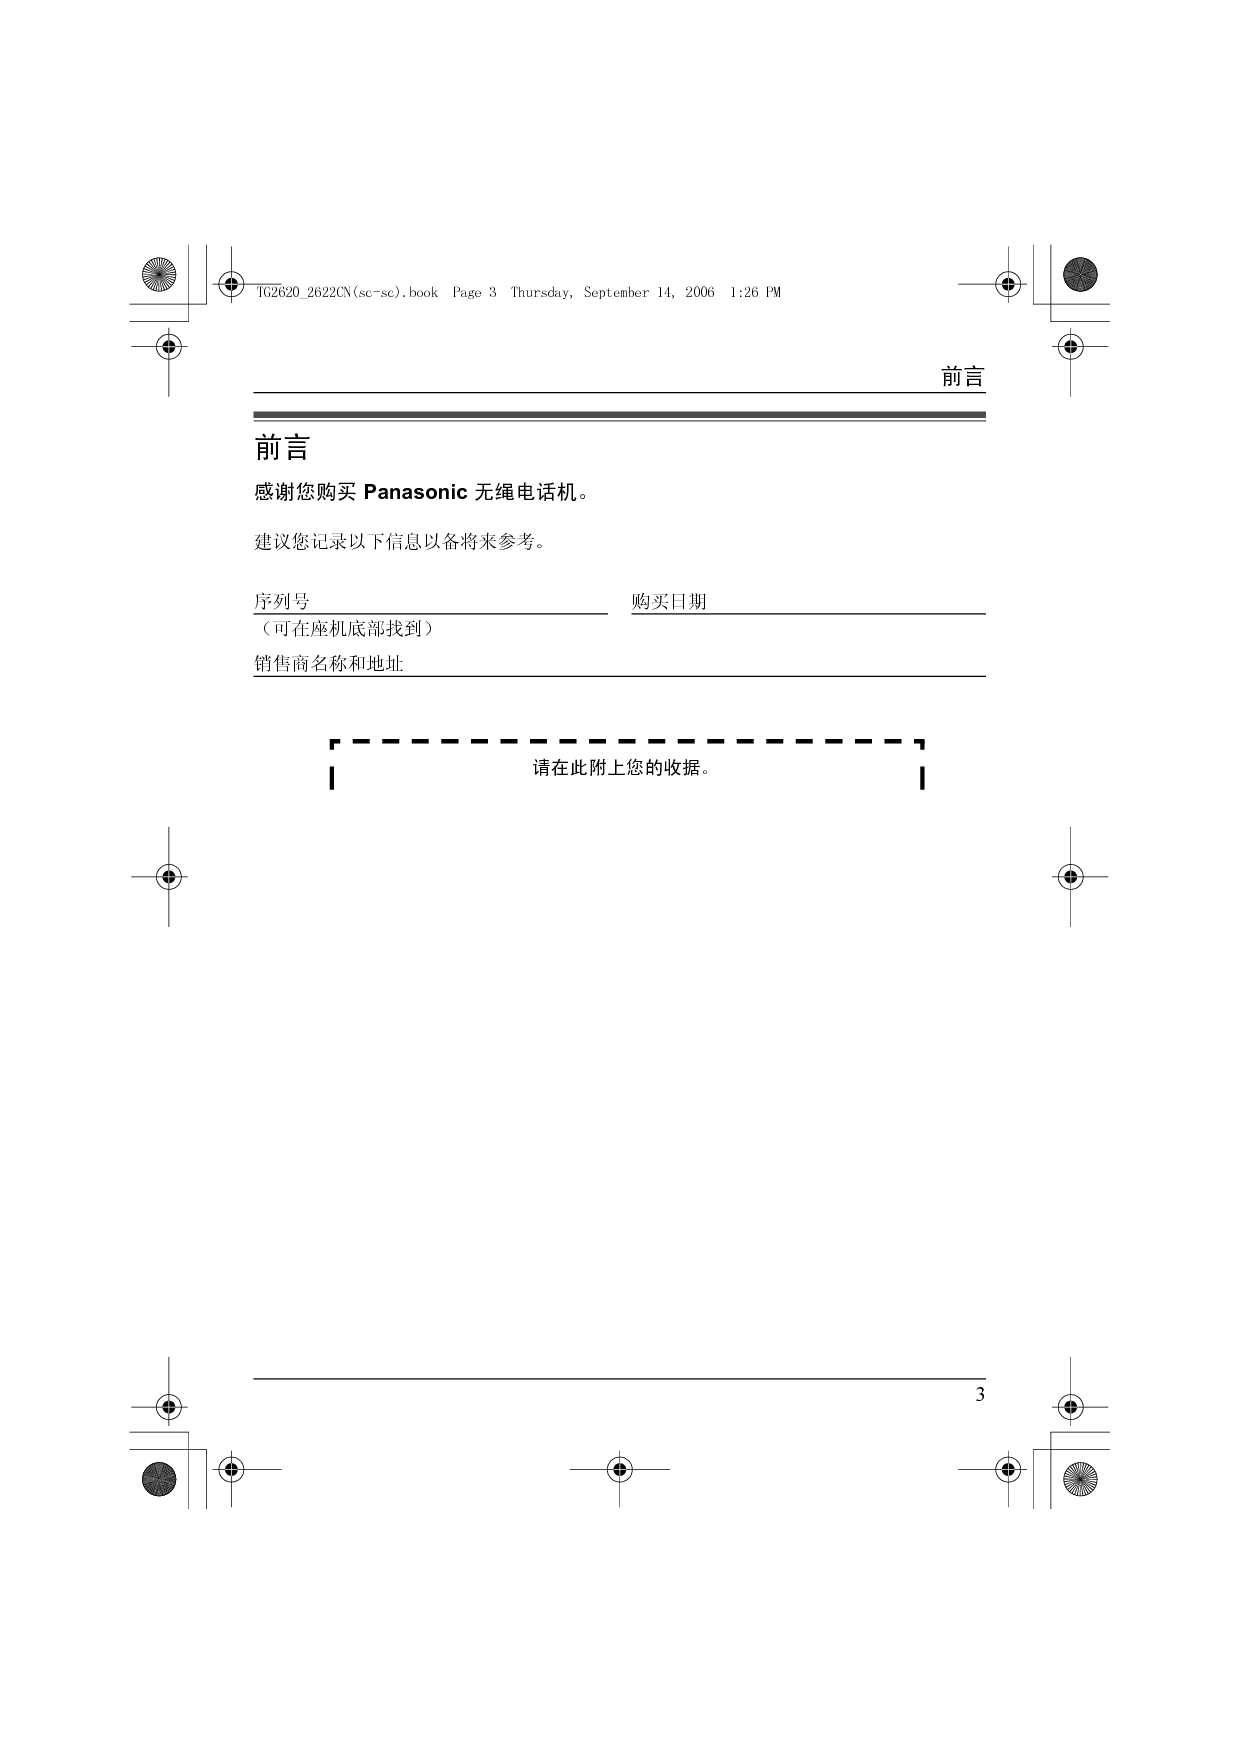 松下 Panasonic HWDCD3939(2620)P/TSD, KX-TG2620CN 说明书 第2页